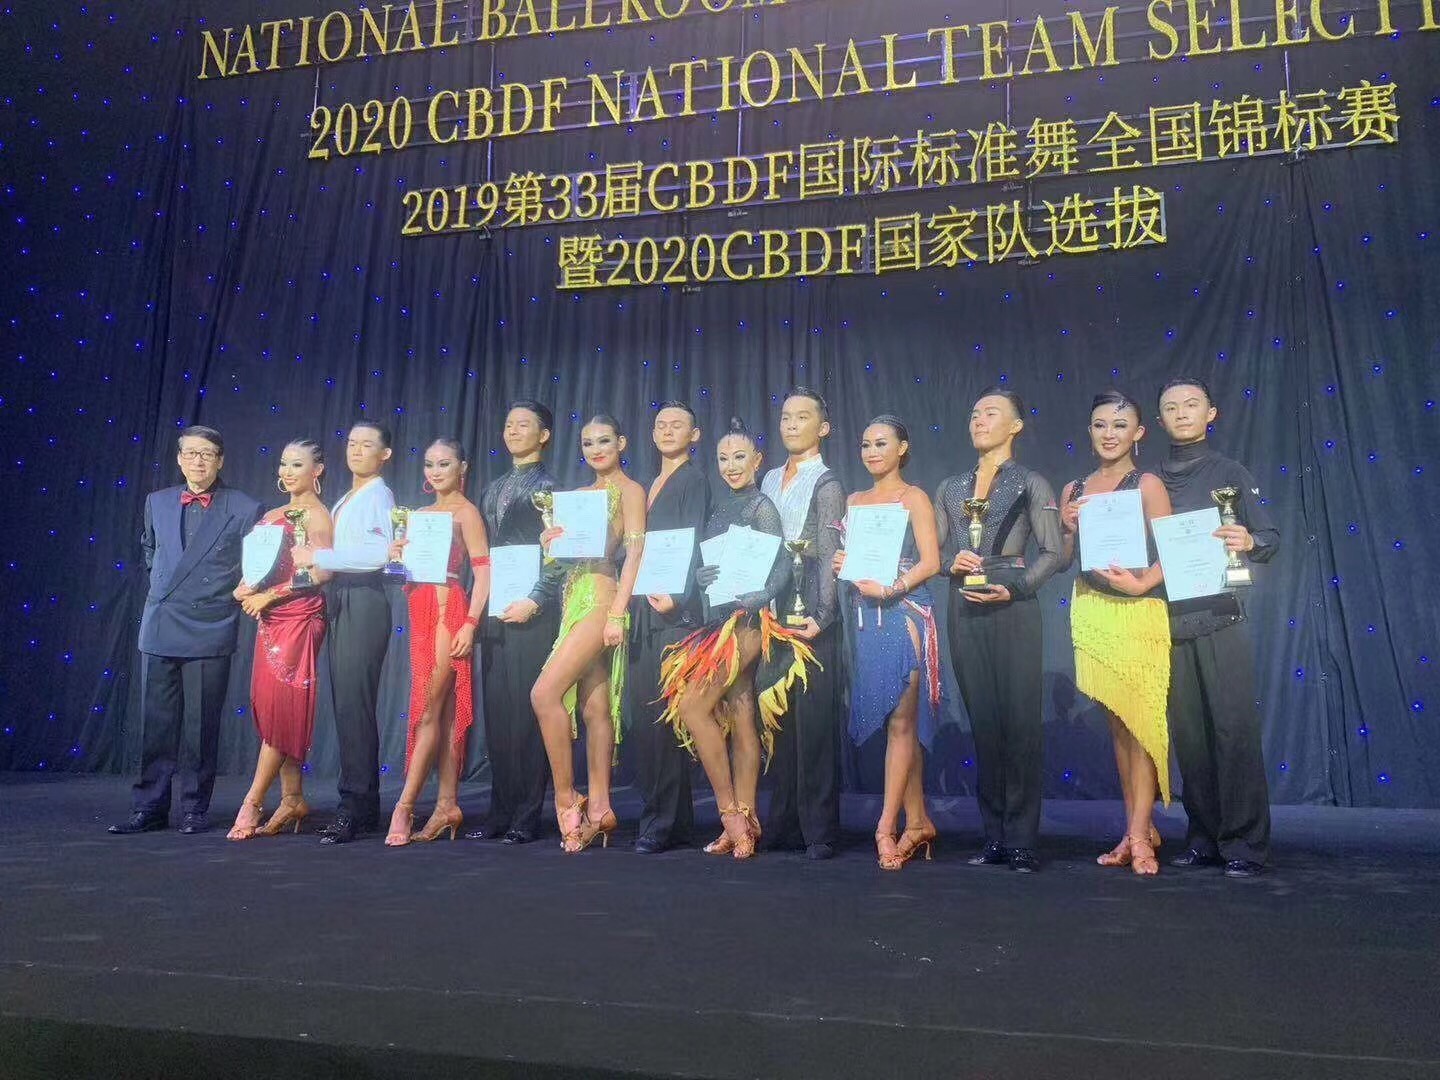 2019年第33届CBDF国际标准舞全国锦标赛 邢乐&李佳营18岁组季军